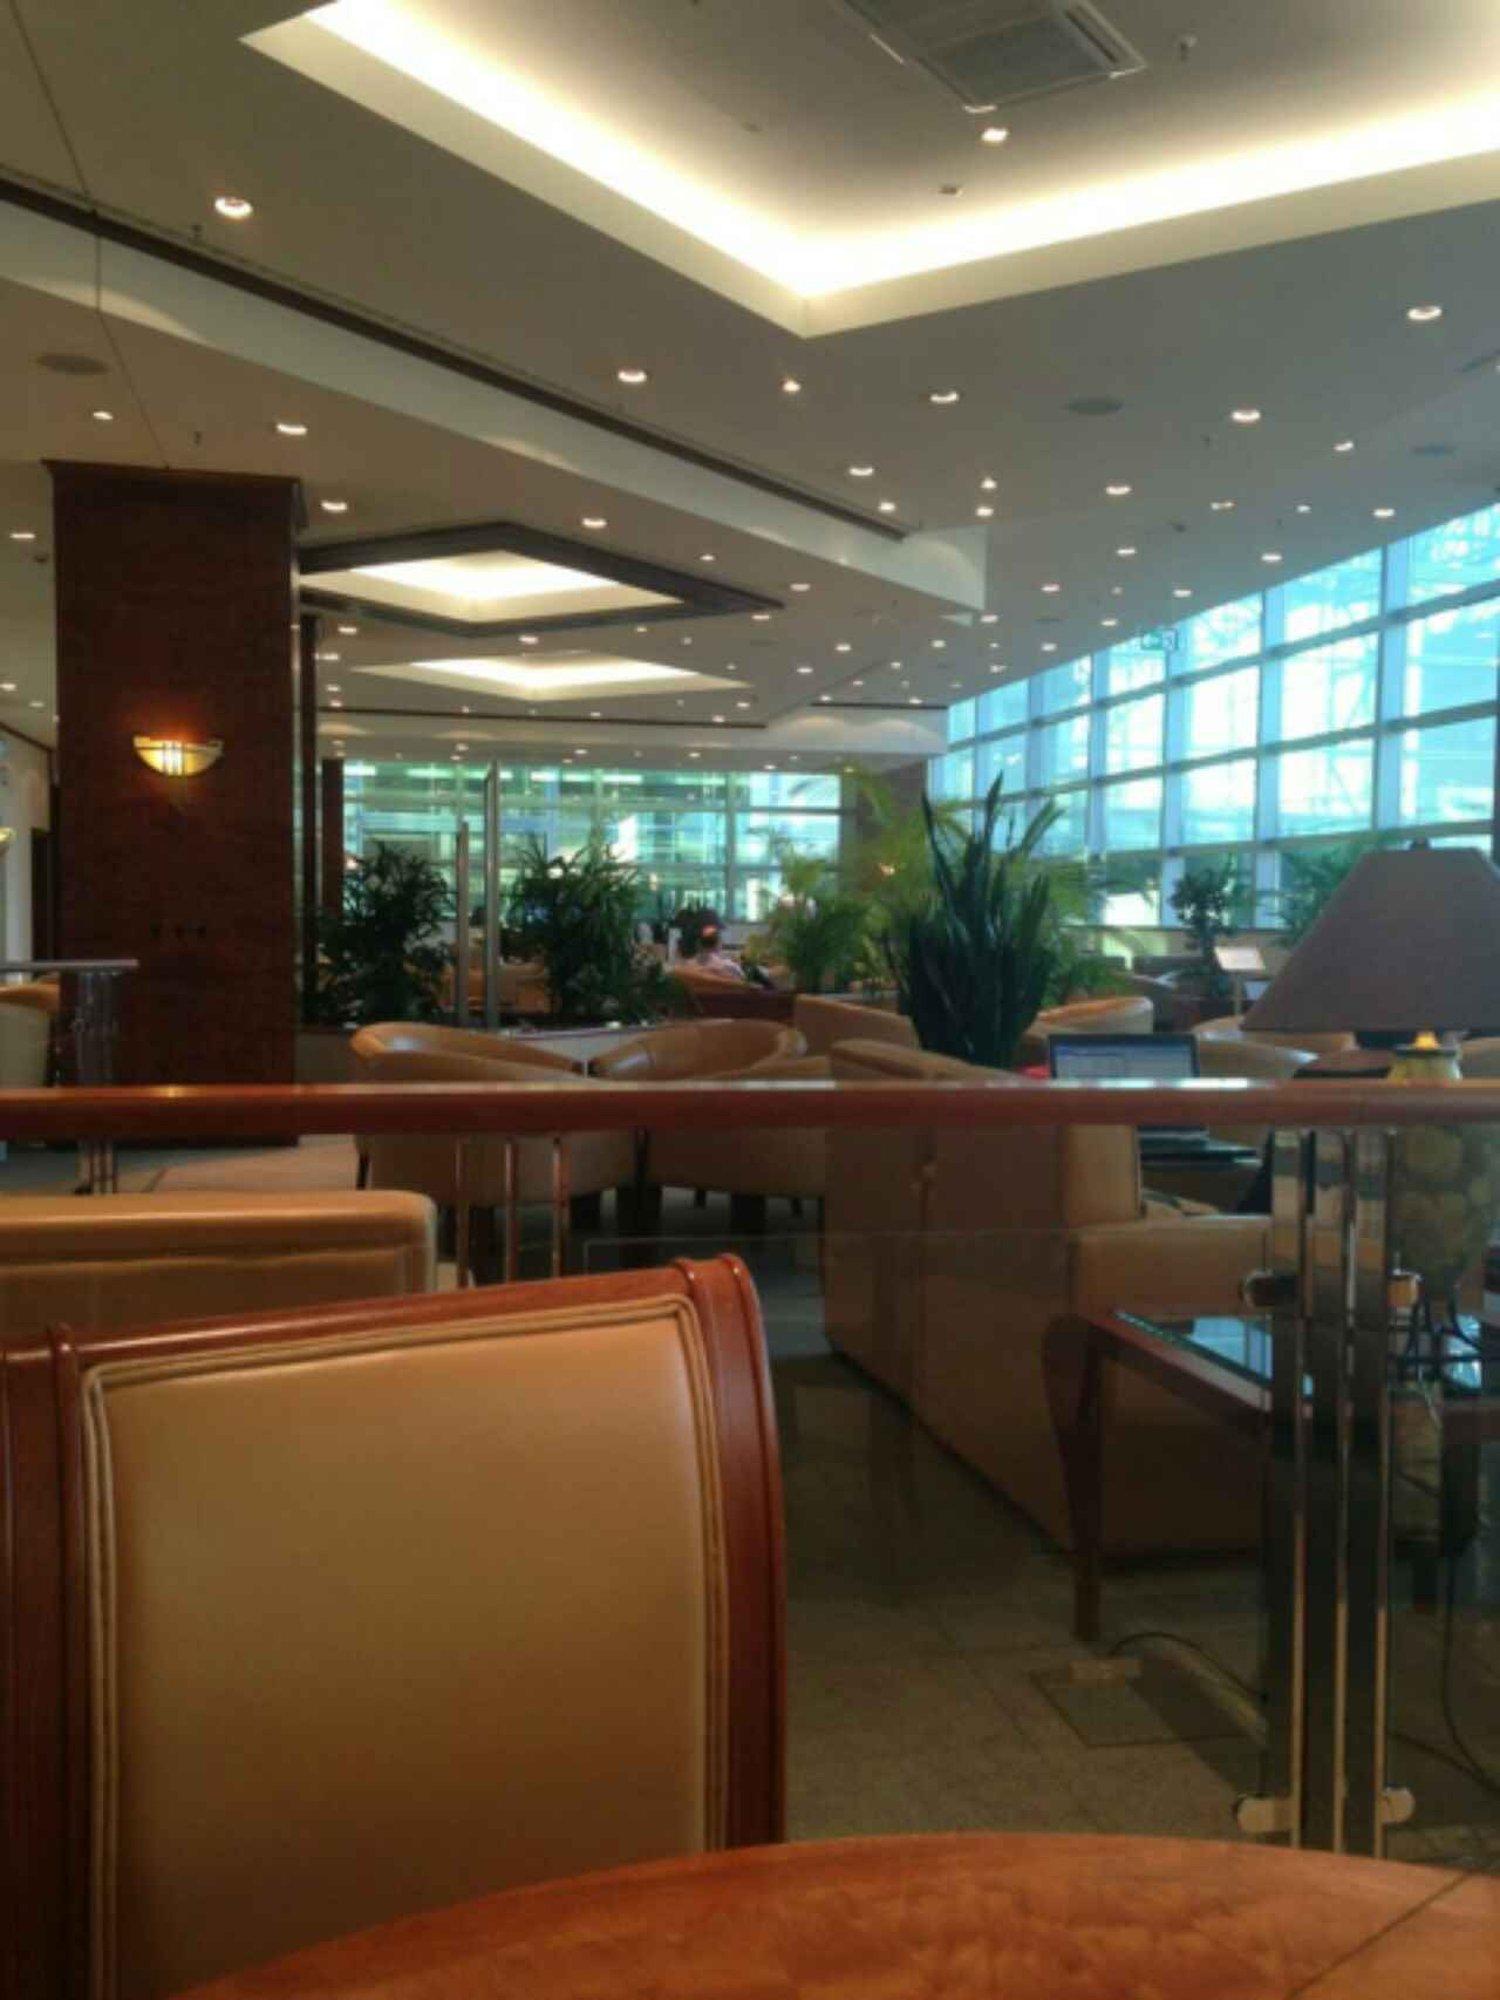 The Emirates Lounge image 6 of 8